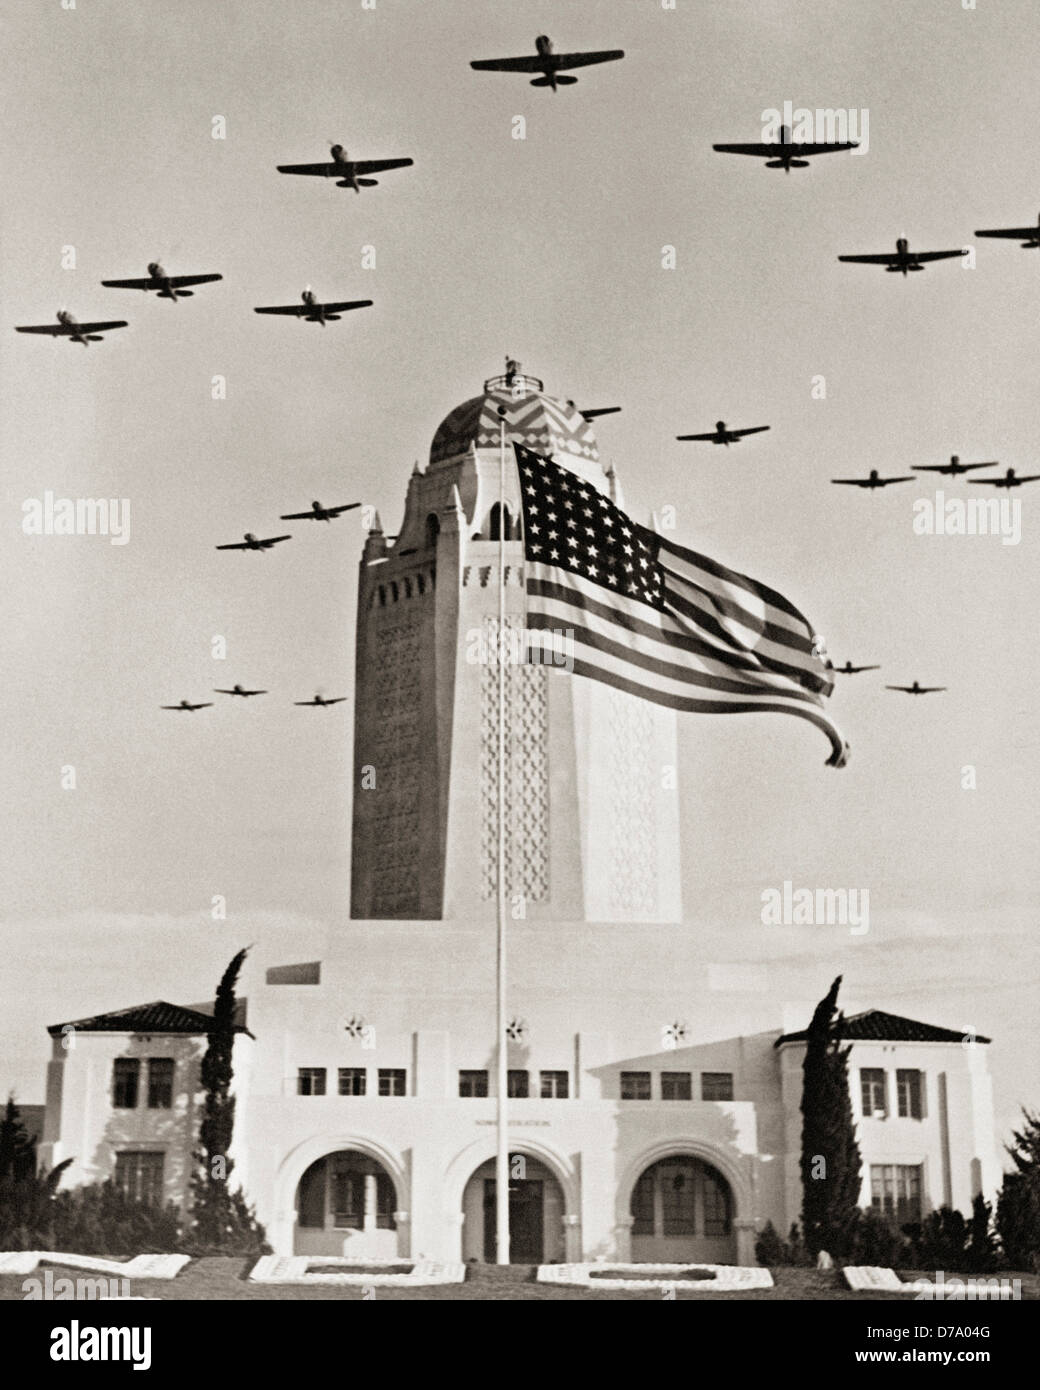 Aviones de combate sobre la bandera del edificio de administración Foto de stock